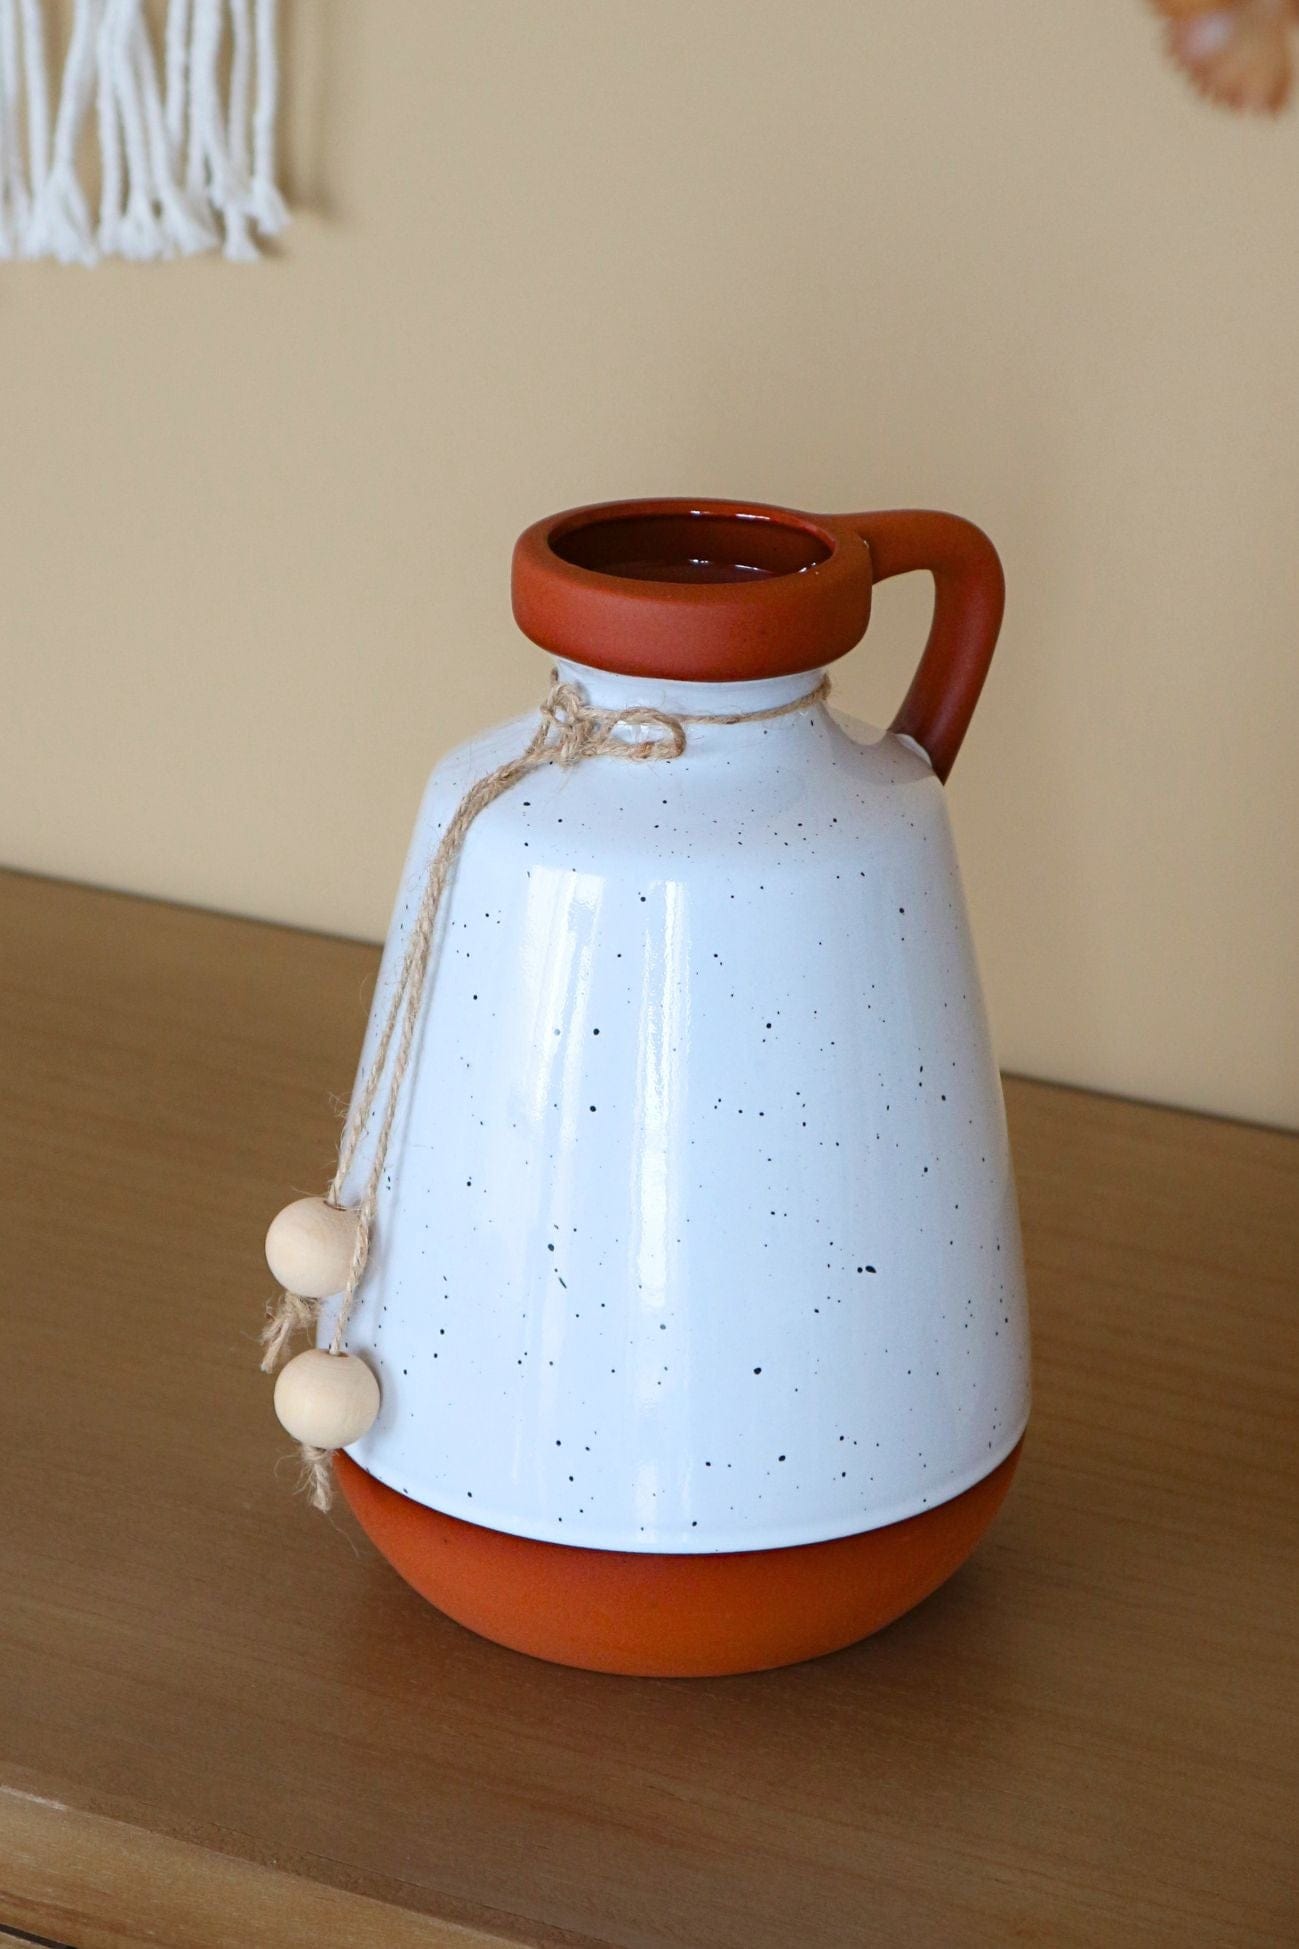 Item International Sian Sian - Vaso in ceramica in stile etnico | Item International